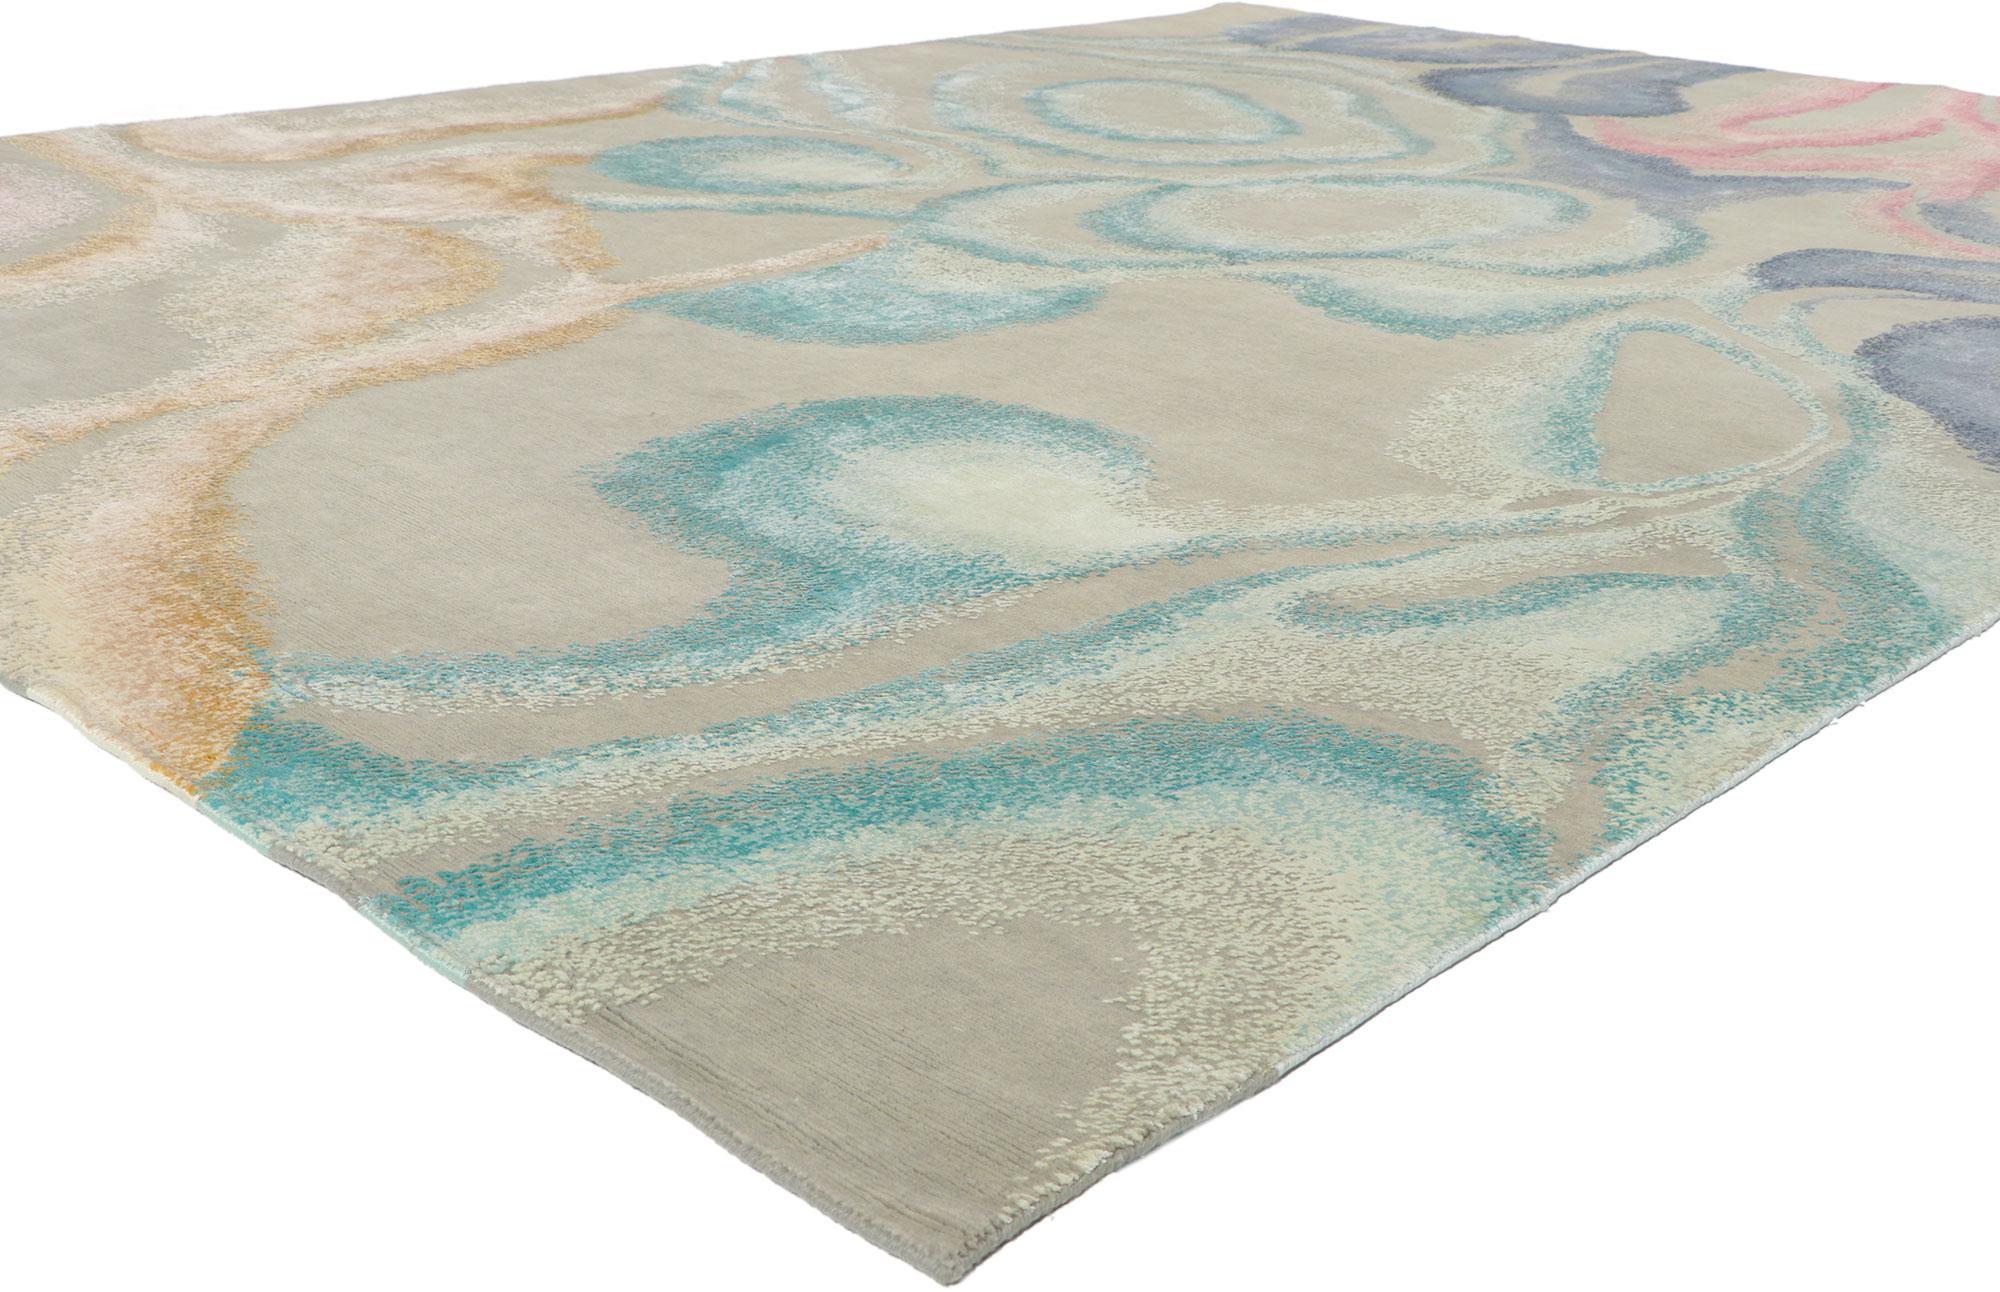 30866 New Contemporary Abstrakter Teppich inspiriert von Georgia O'Keeffe, 08'11 x 11'10. Dieser handgeknüpfte, strukturierte Teppich in modernem Stil und mit erhabenem Seidendesign mit unglaublichen Details und Textur ist eine fesselnde Vision